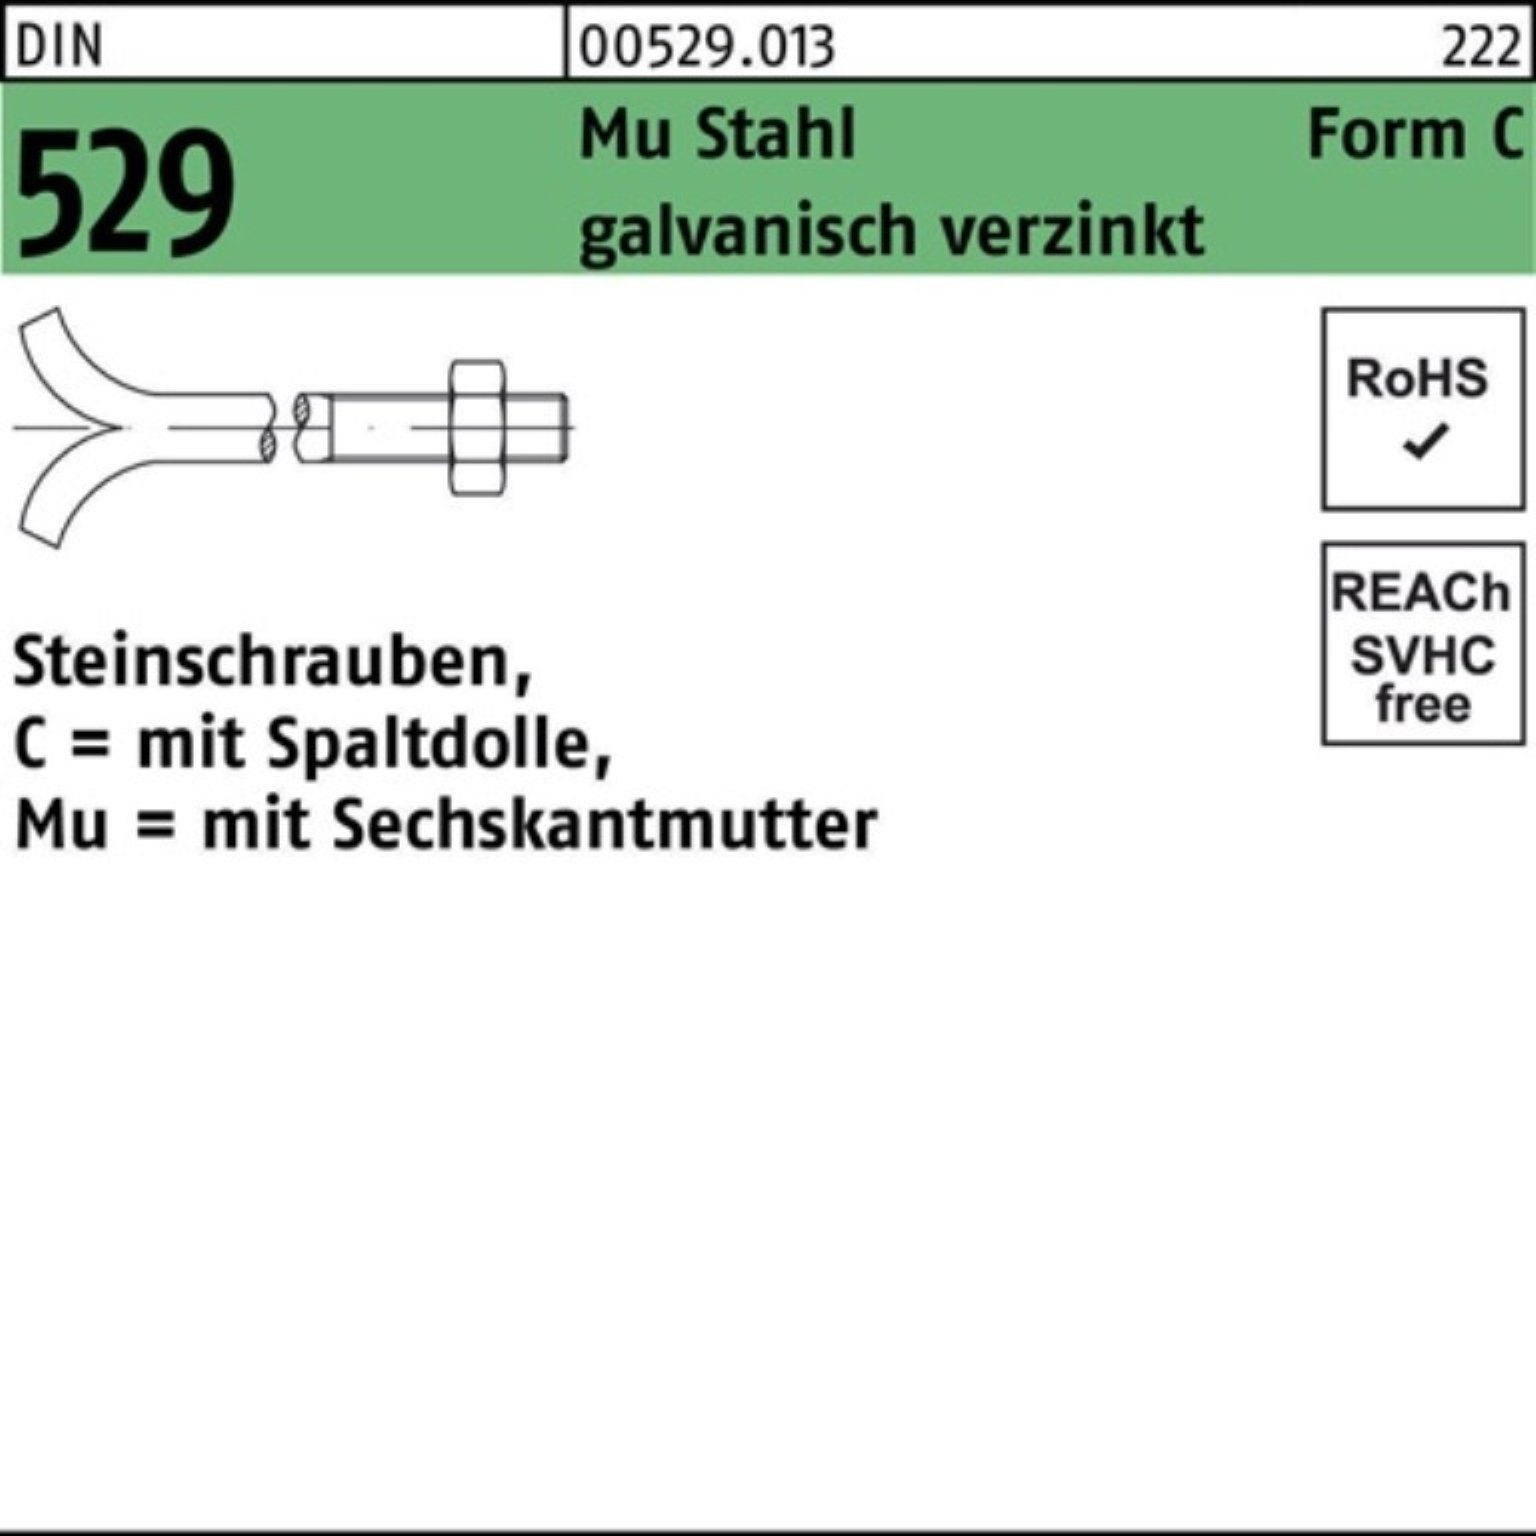 Schraube Reyher 100er Steinschraube Pack CM Spaltdolle/6-ktmutter DIN 529 Mu 3. 16x150